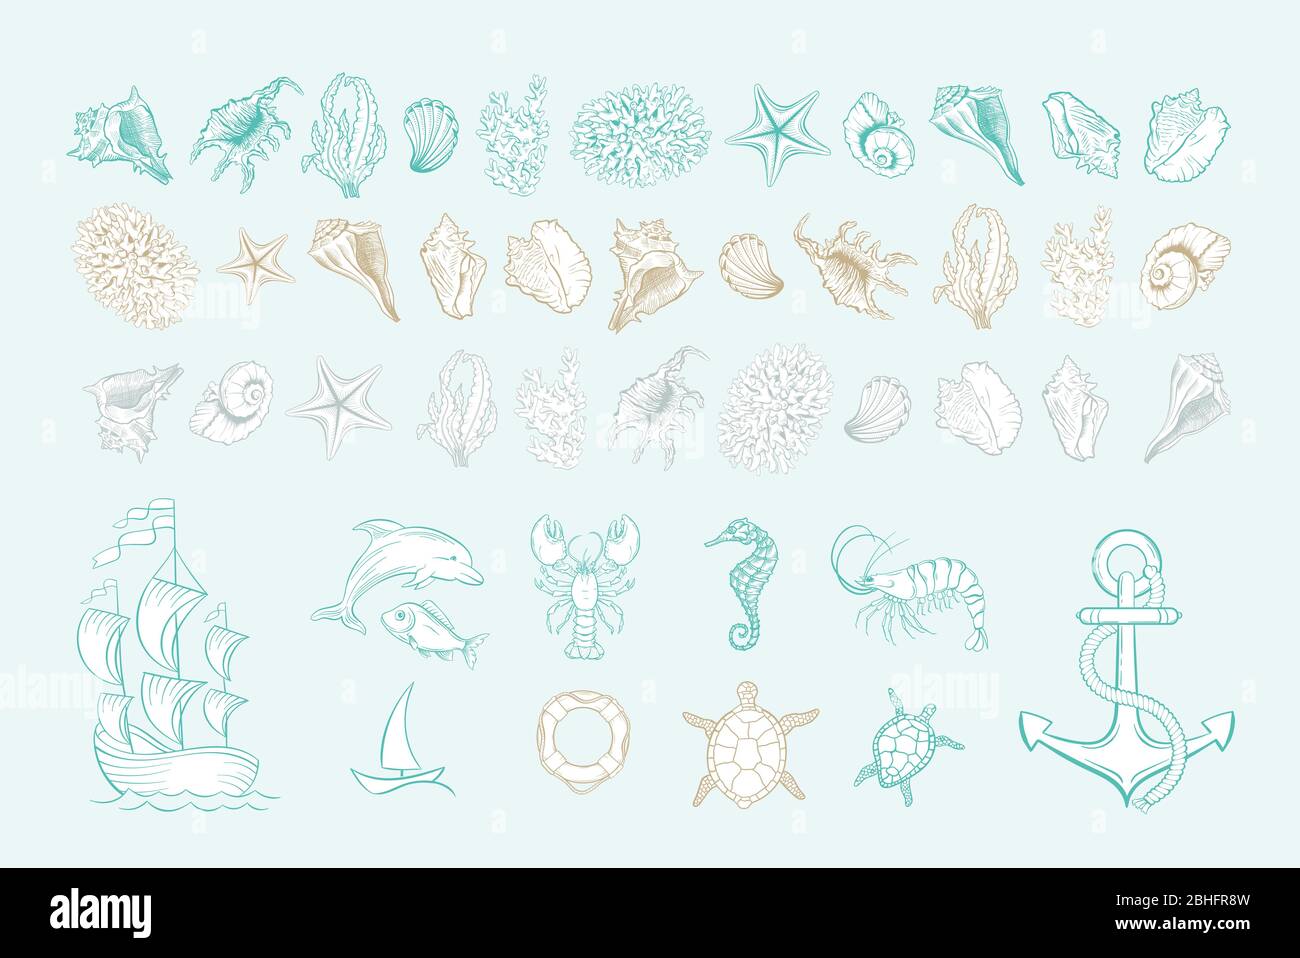 Icone vettoriali di gusci marini, ancora e molluschi. Set di icone disegnate a mano con riempimento bianco. Conchiglia marina, cavalluccio marino, pesci delfino e tartaruga, ancora e boa, coralli, gamberi e nave da yacht Illustrazione Vettoriale